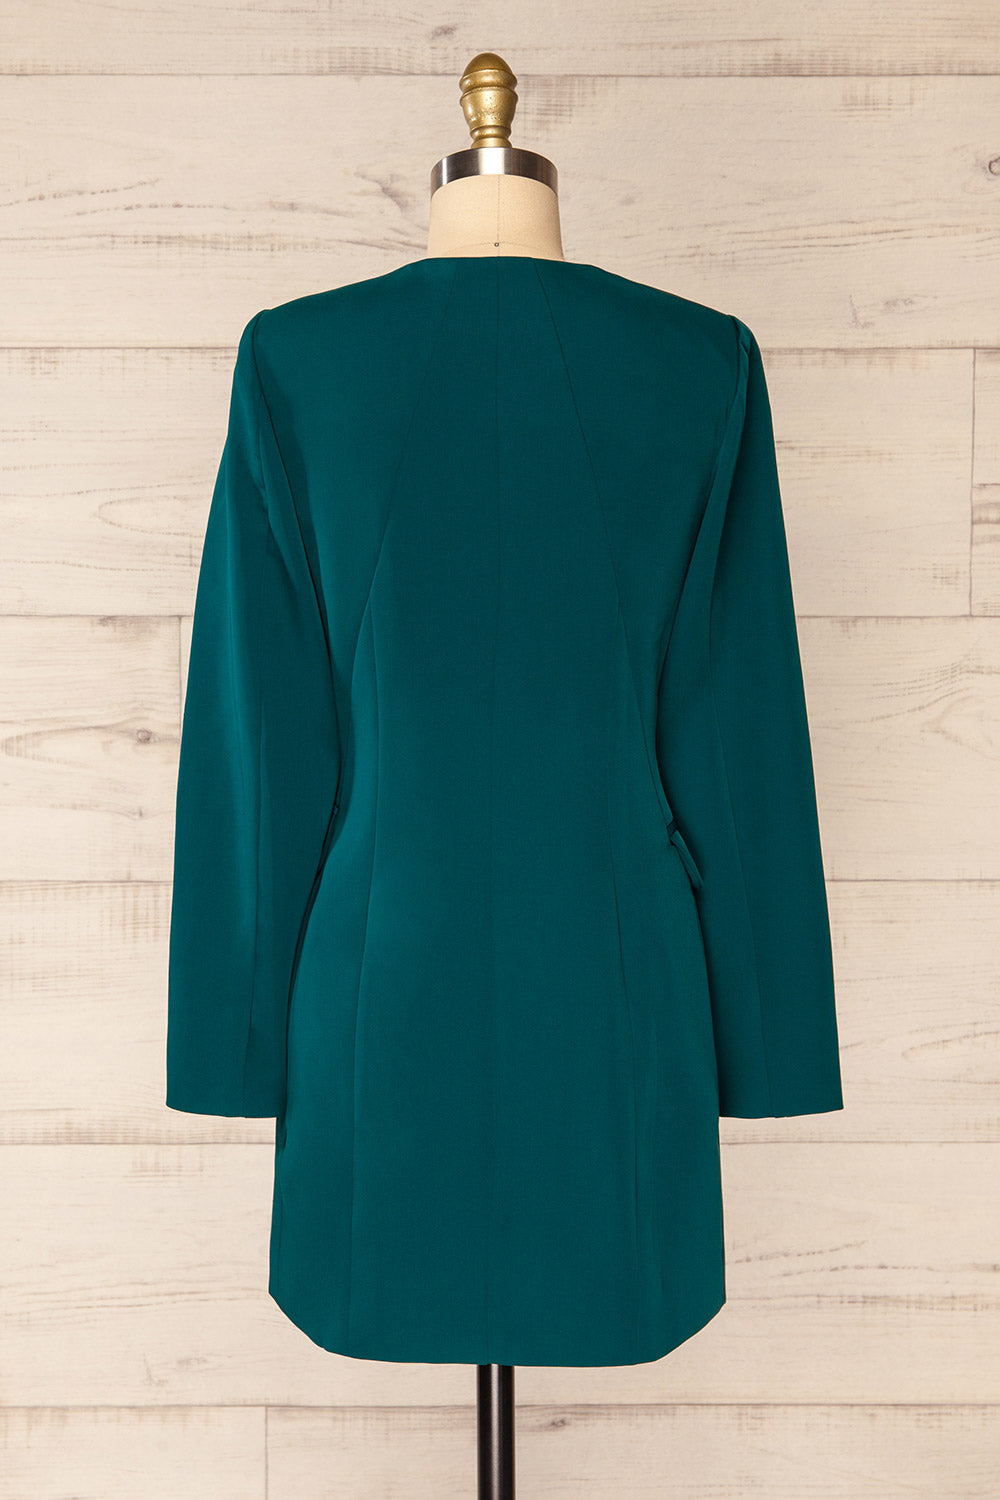 Savila Green Asymmetrical Blazer Dress | La petit garçonne back view